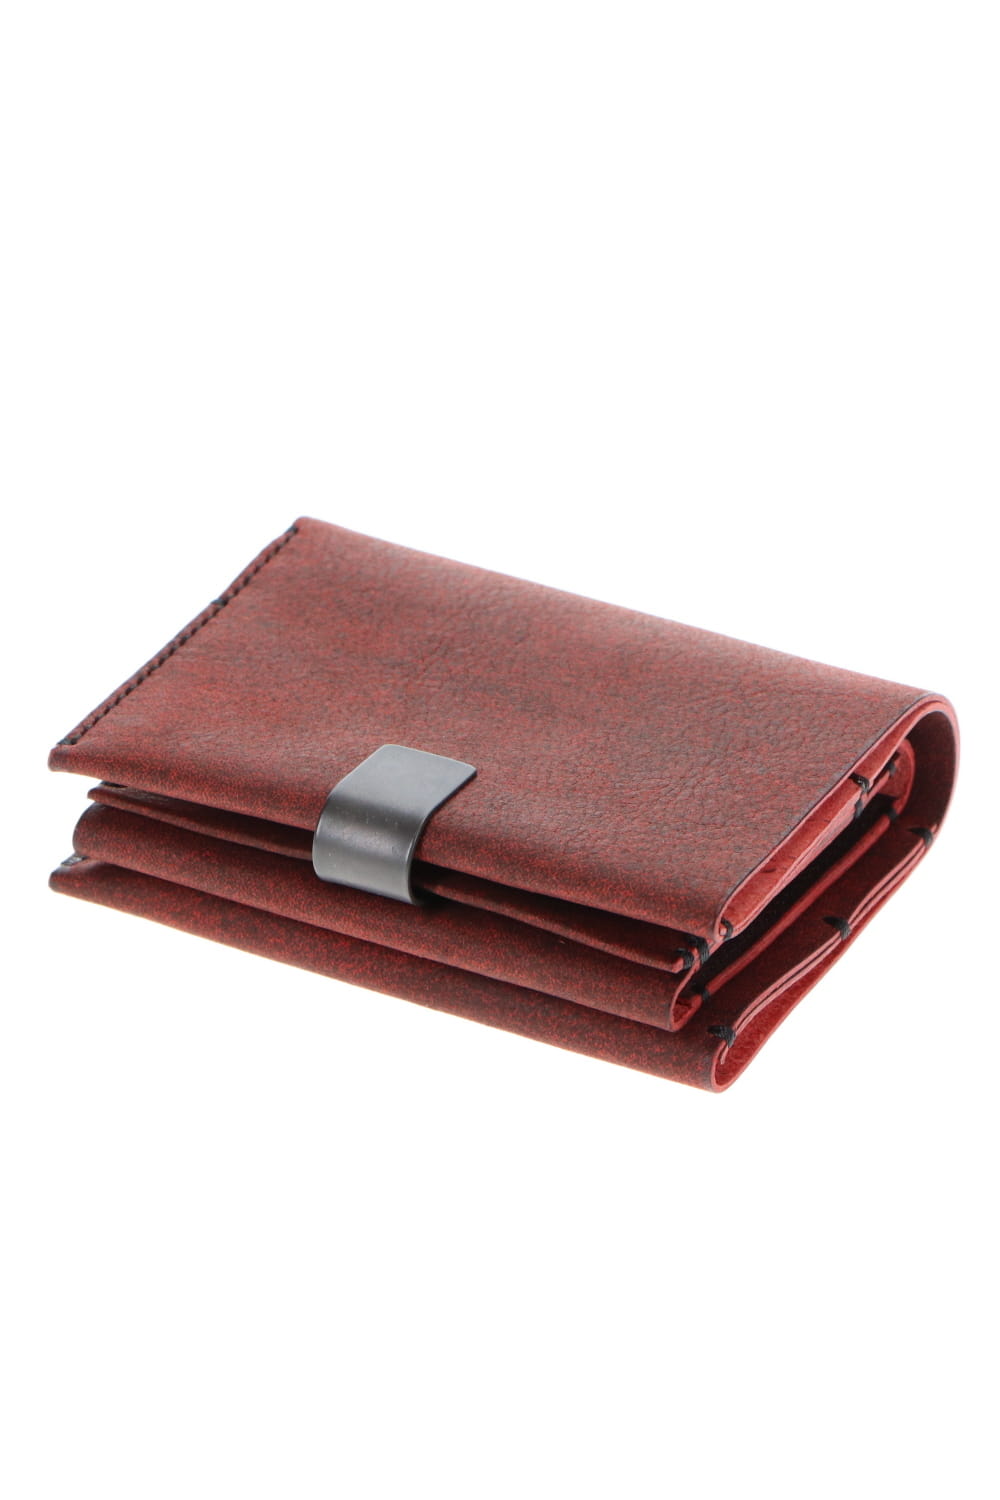 Ziggie Wallets - minimalist belt wallets